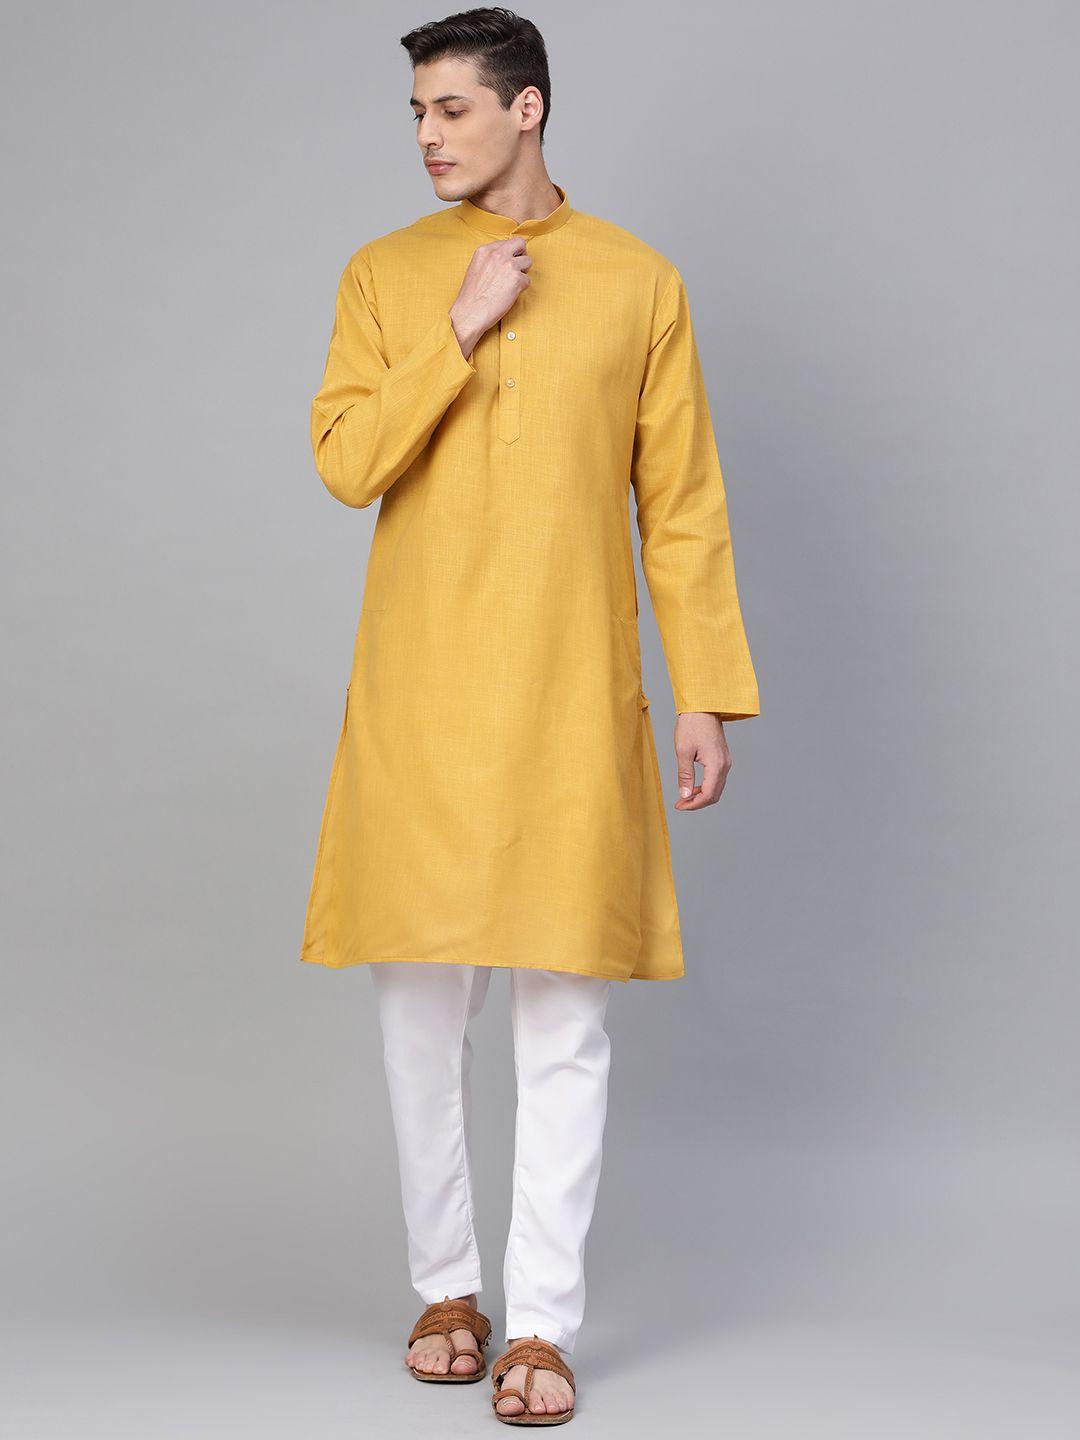 manq-men-mustard-yellow-&-white-solid-kurta-with-pyjamas